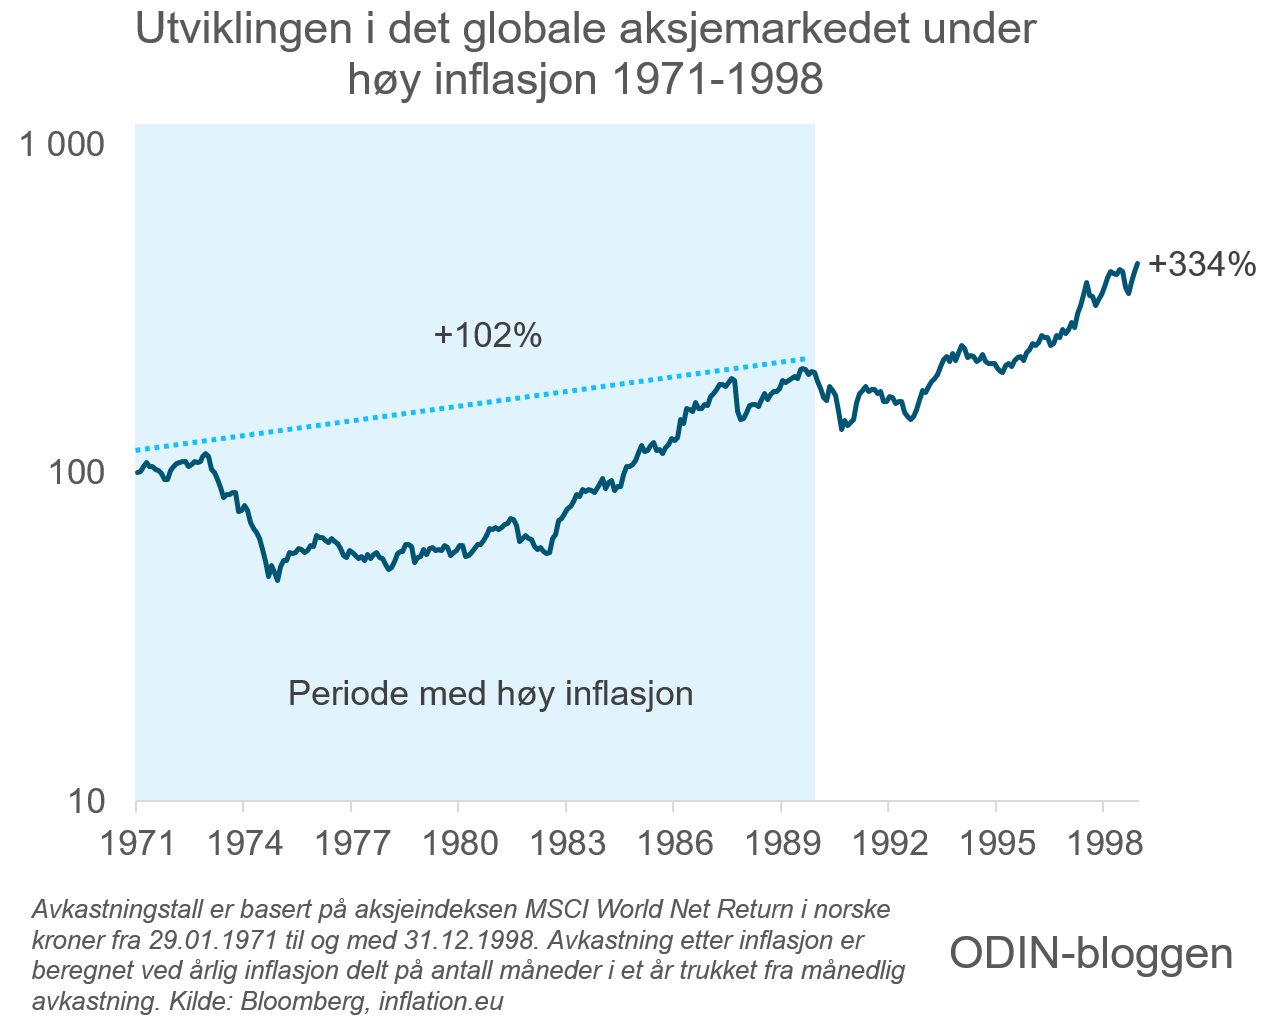 Her ser du utviklingen i det globale aksjemarkedet fra januar 1971 til og med desember 1998 når inflasjon er trukket fra.